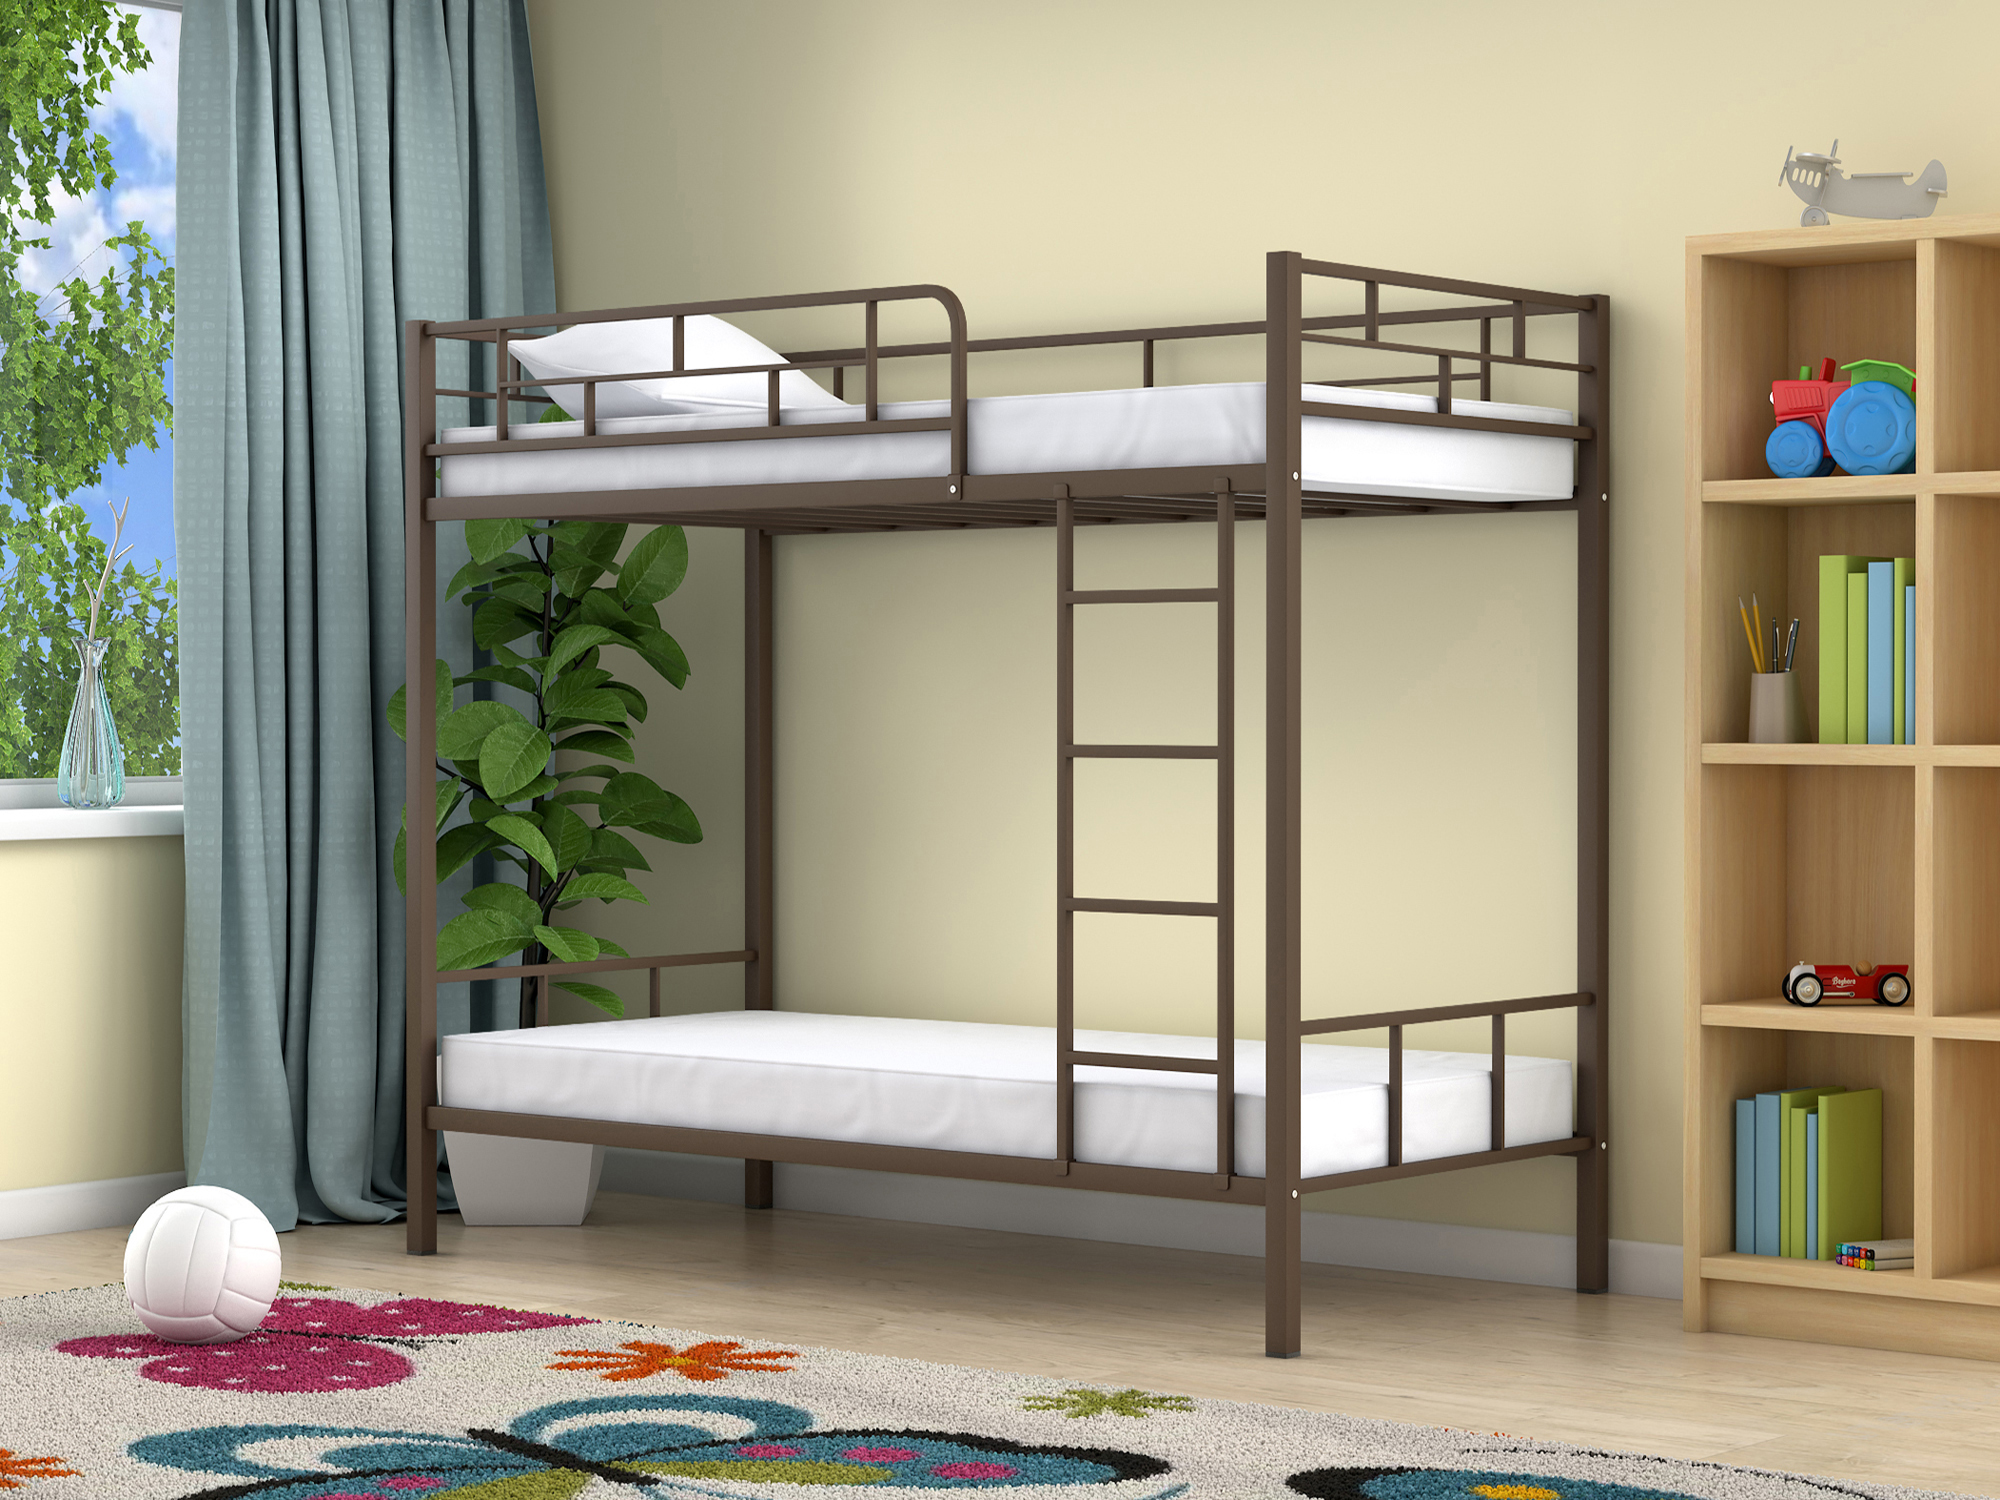 Двухъярусная кровать Ницца (90х190/90х190) Коричневый, Металл двухъярусная кровать ницца 90х190 венге коричневый темный зеленый лдсп металл